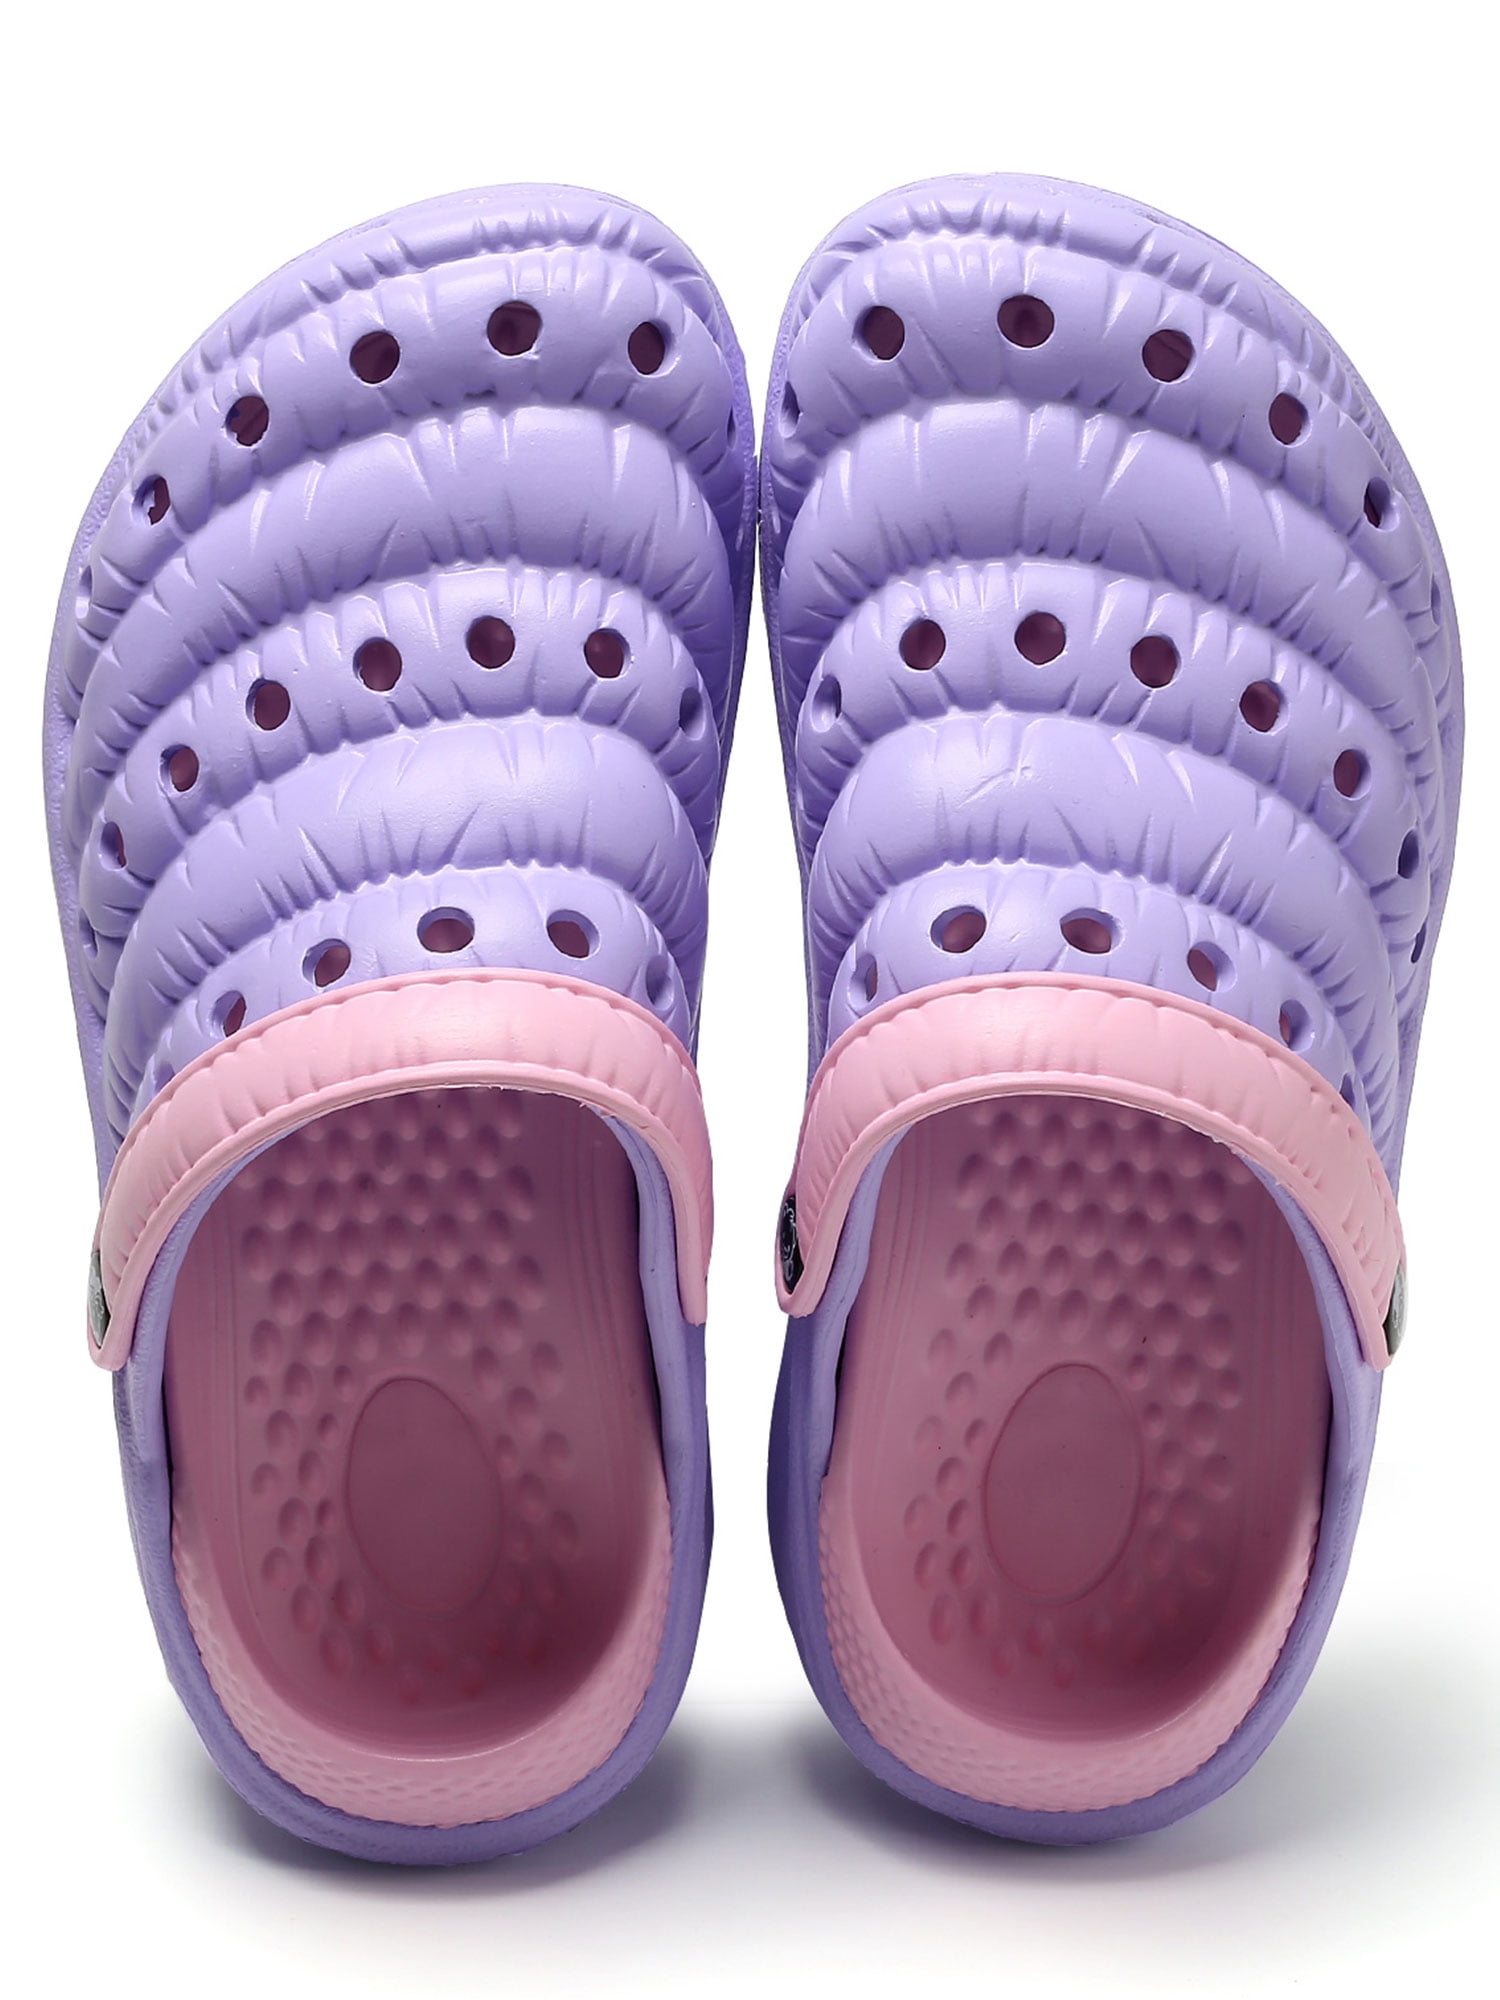 Tanleewa Women's Shower Shoes AntiSlip Slipper